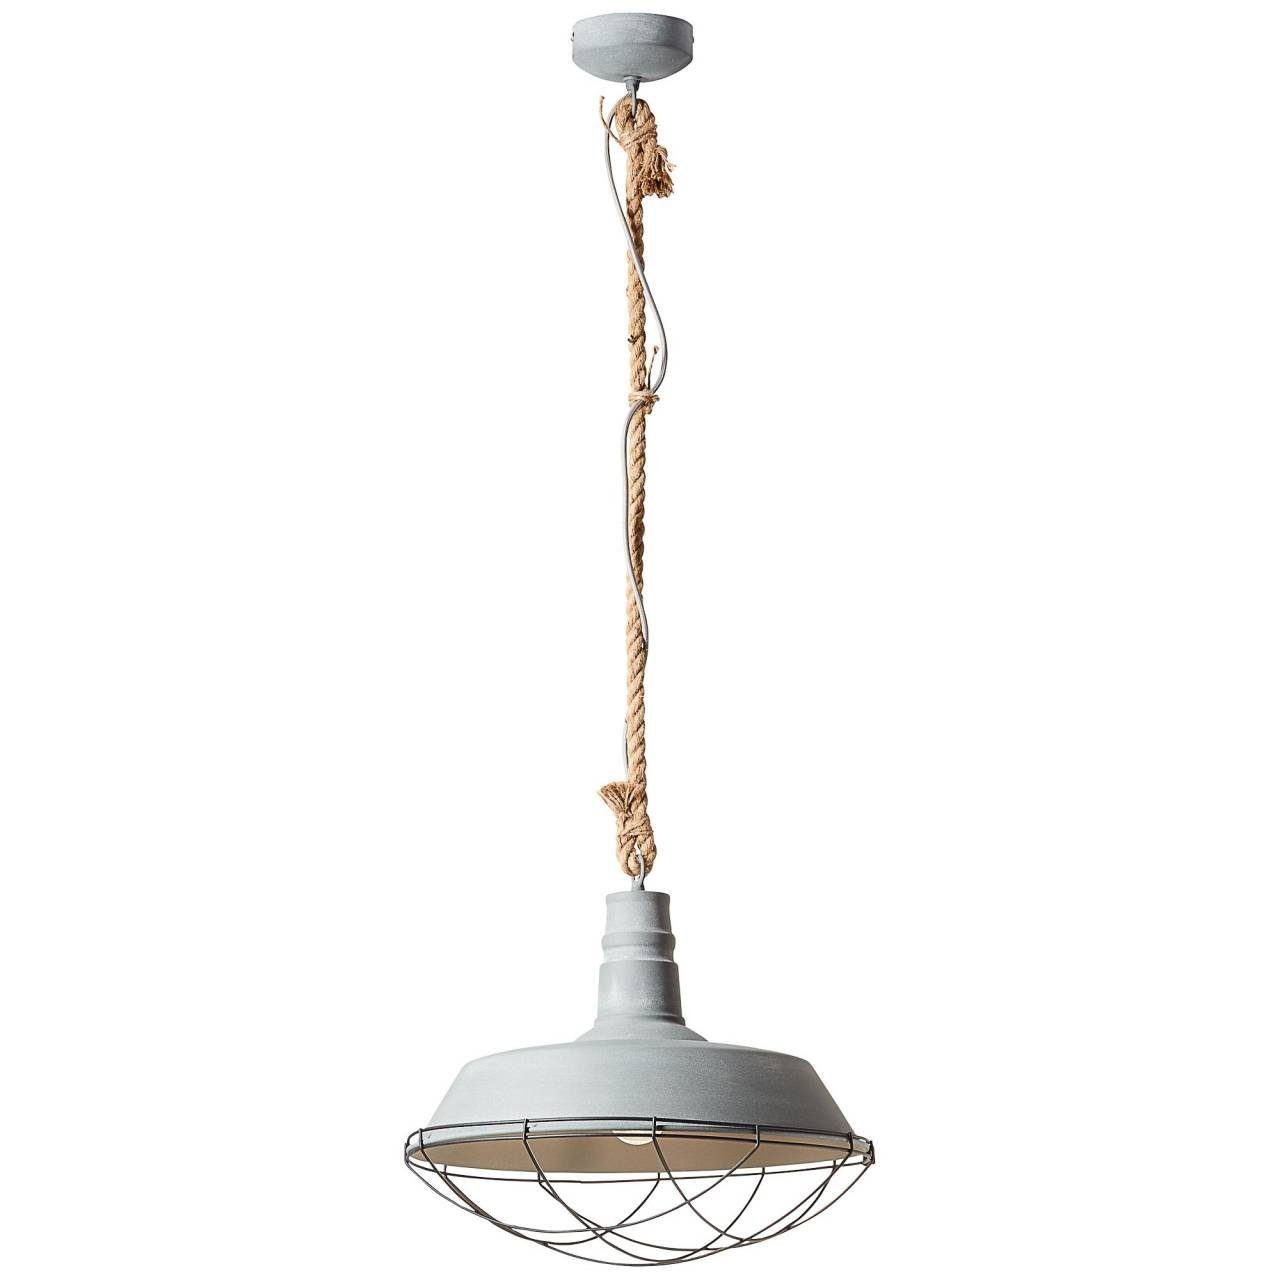 Lampe Brilliant 60W, Rope, 1x E27, Beton grau Pendelleuchte geeignet 47cm A60, Rope Pendelleuchte